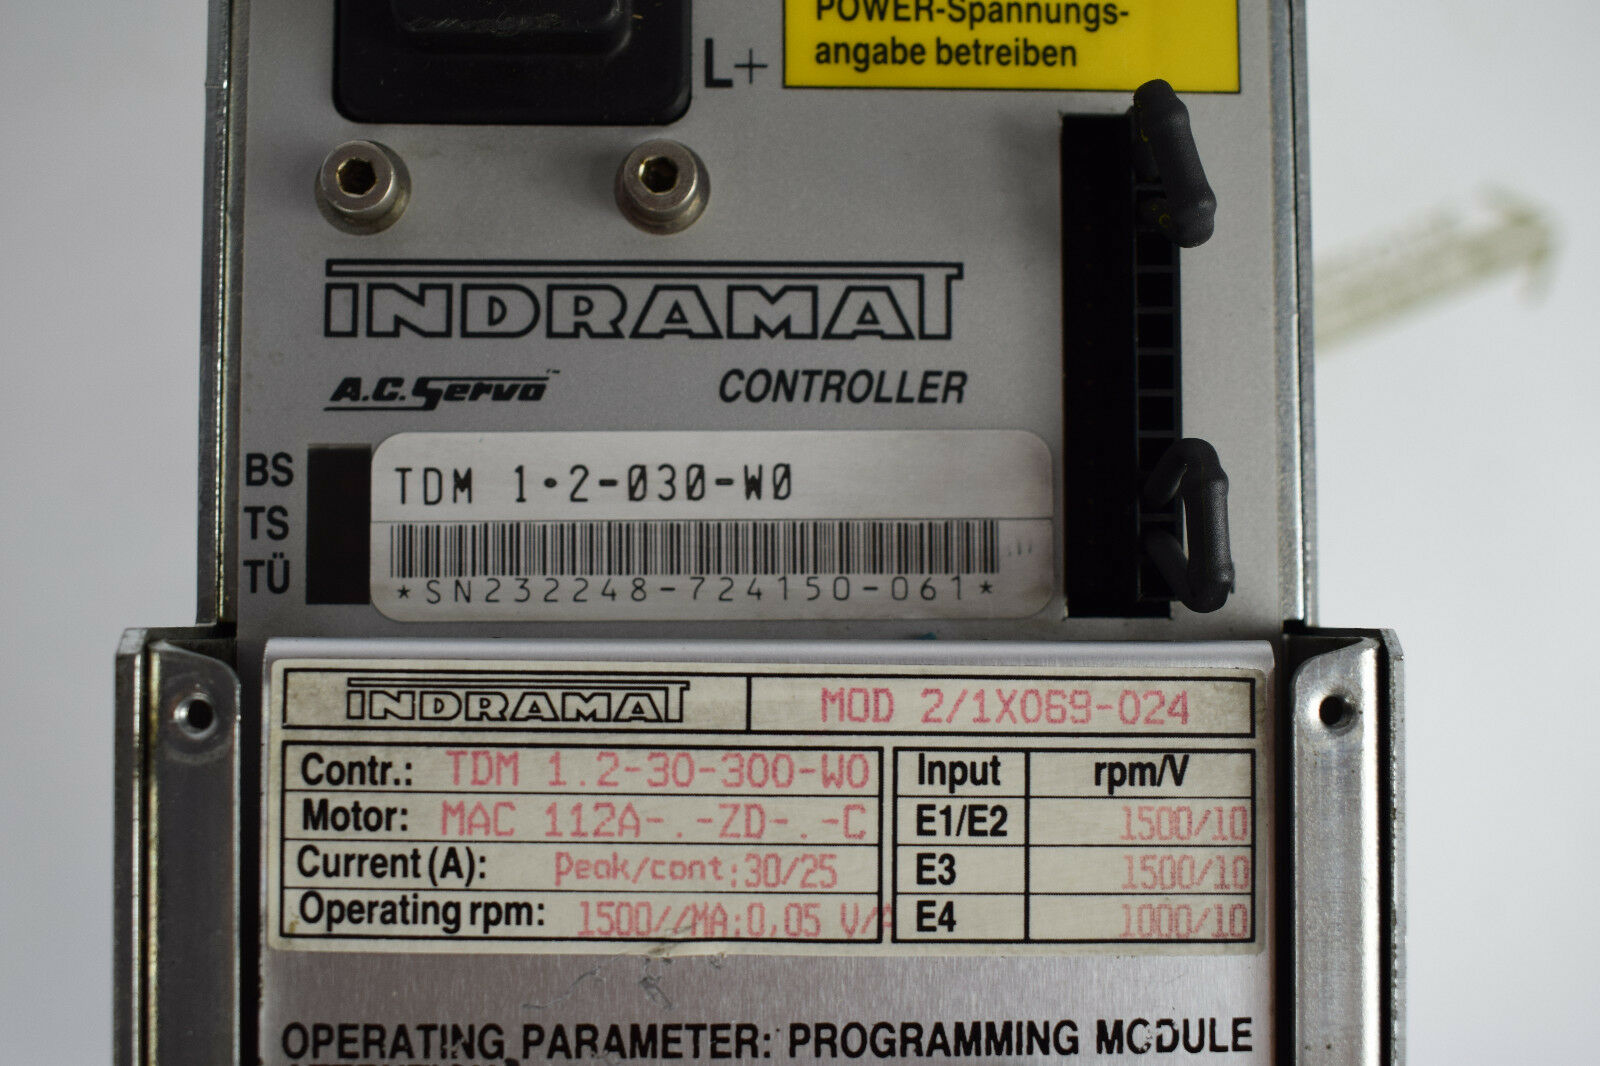 Indramat A.C.Servo Controller TDM 1.2-030-W0